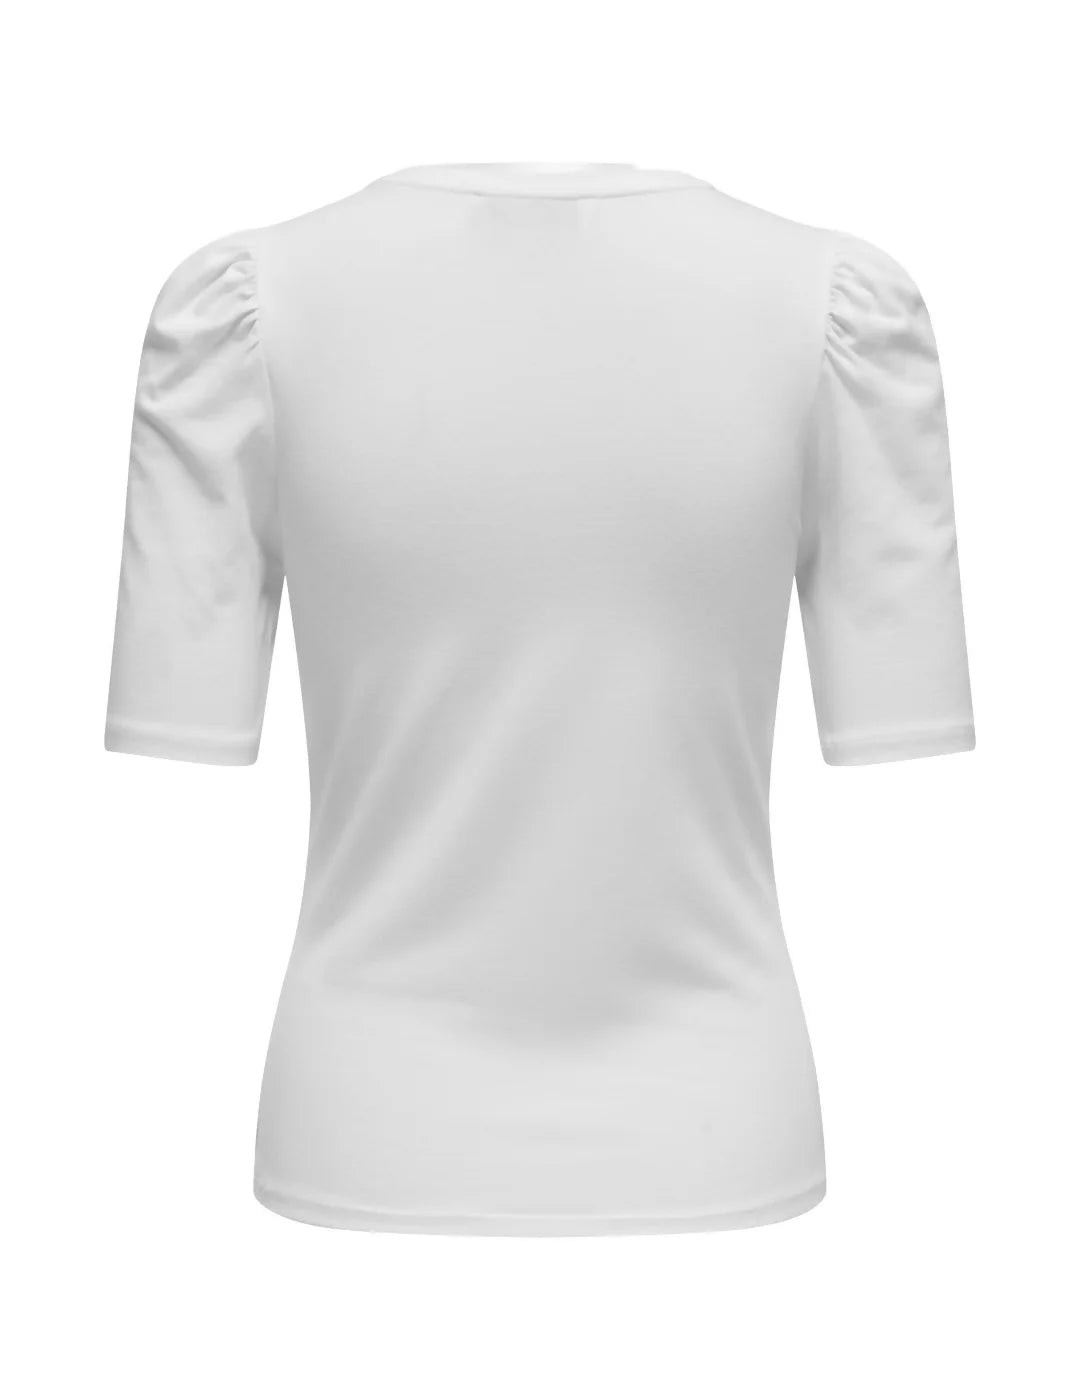 Camiseta Manga Abullonada Only Blanco | Bicos de Fío
